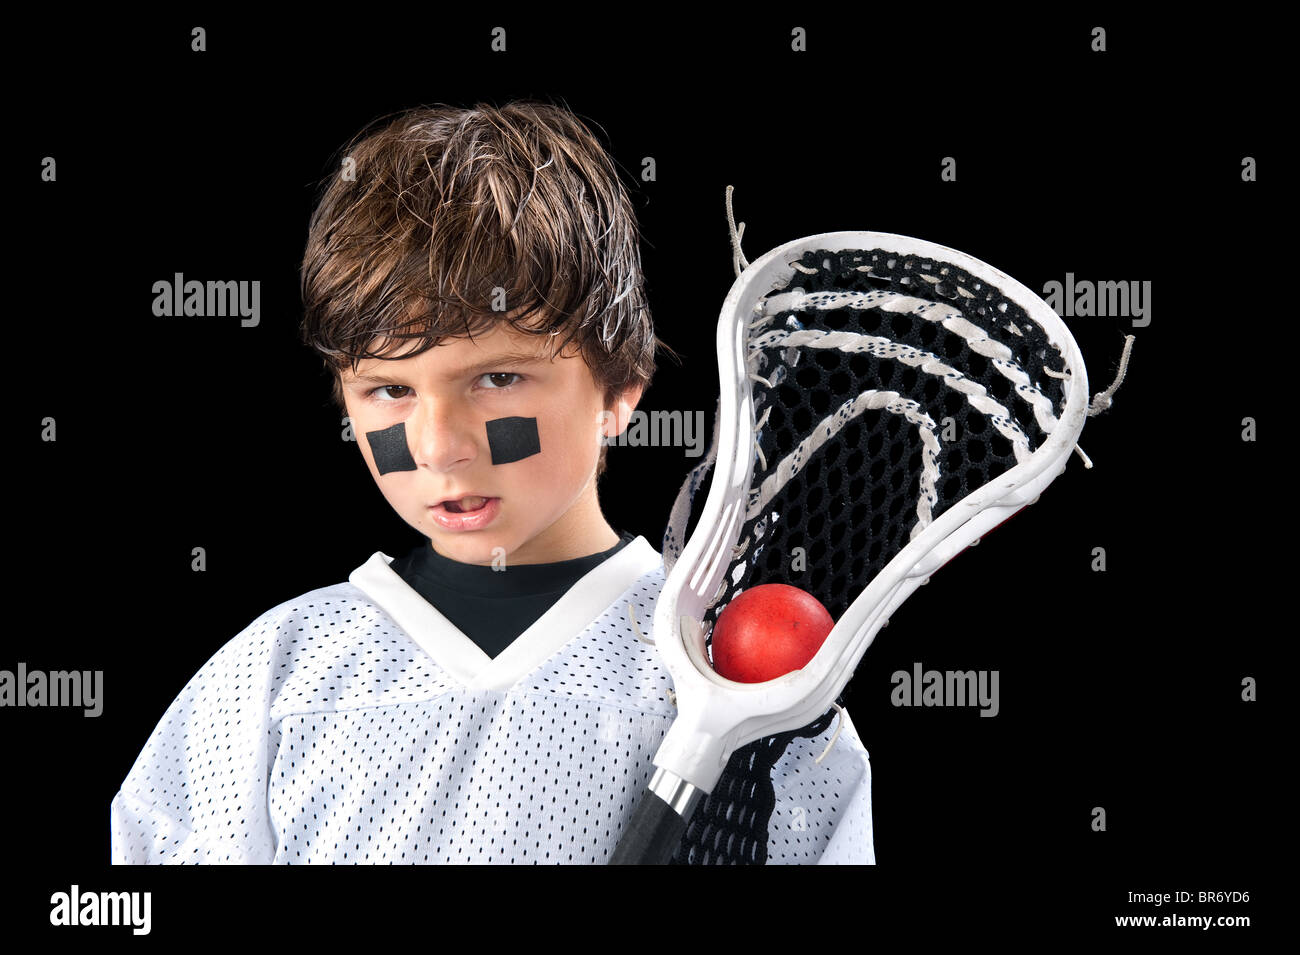 Un sudato ragazzo giovane pone con la sua lacrosse stick (crosse) dopo una partita. Foto Stock